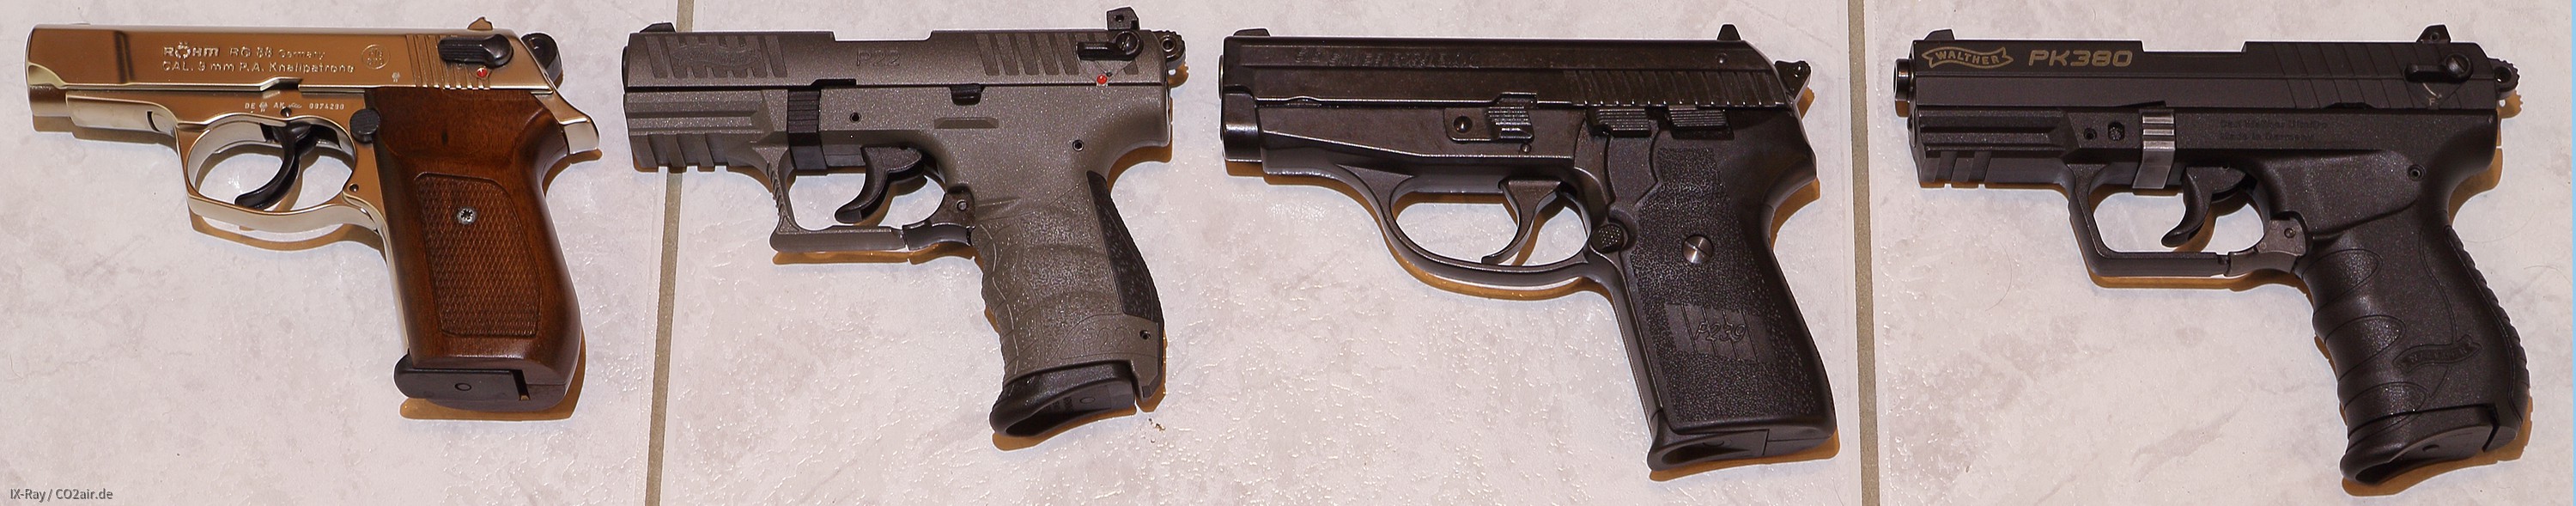 [Größenvergleich] Röhm RG 88 - Walther P22Q - Sig Sauer P239 - Walther PK380